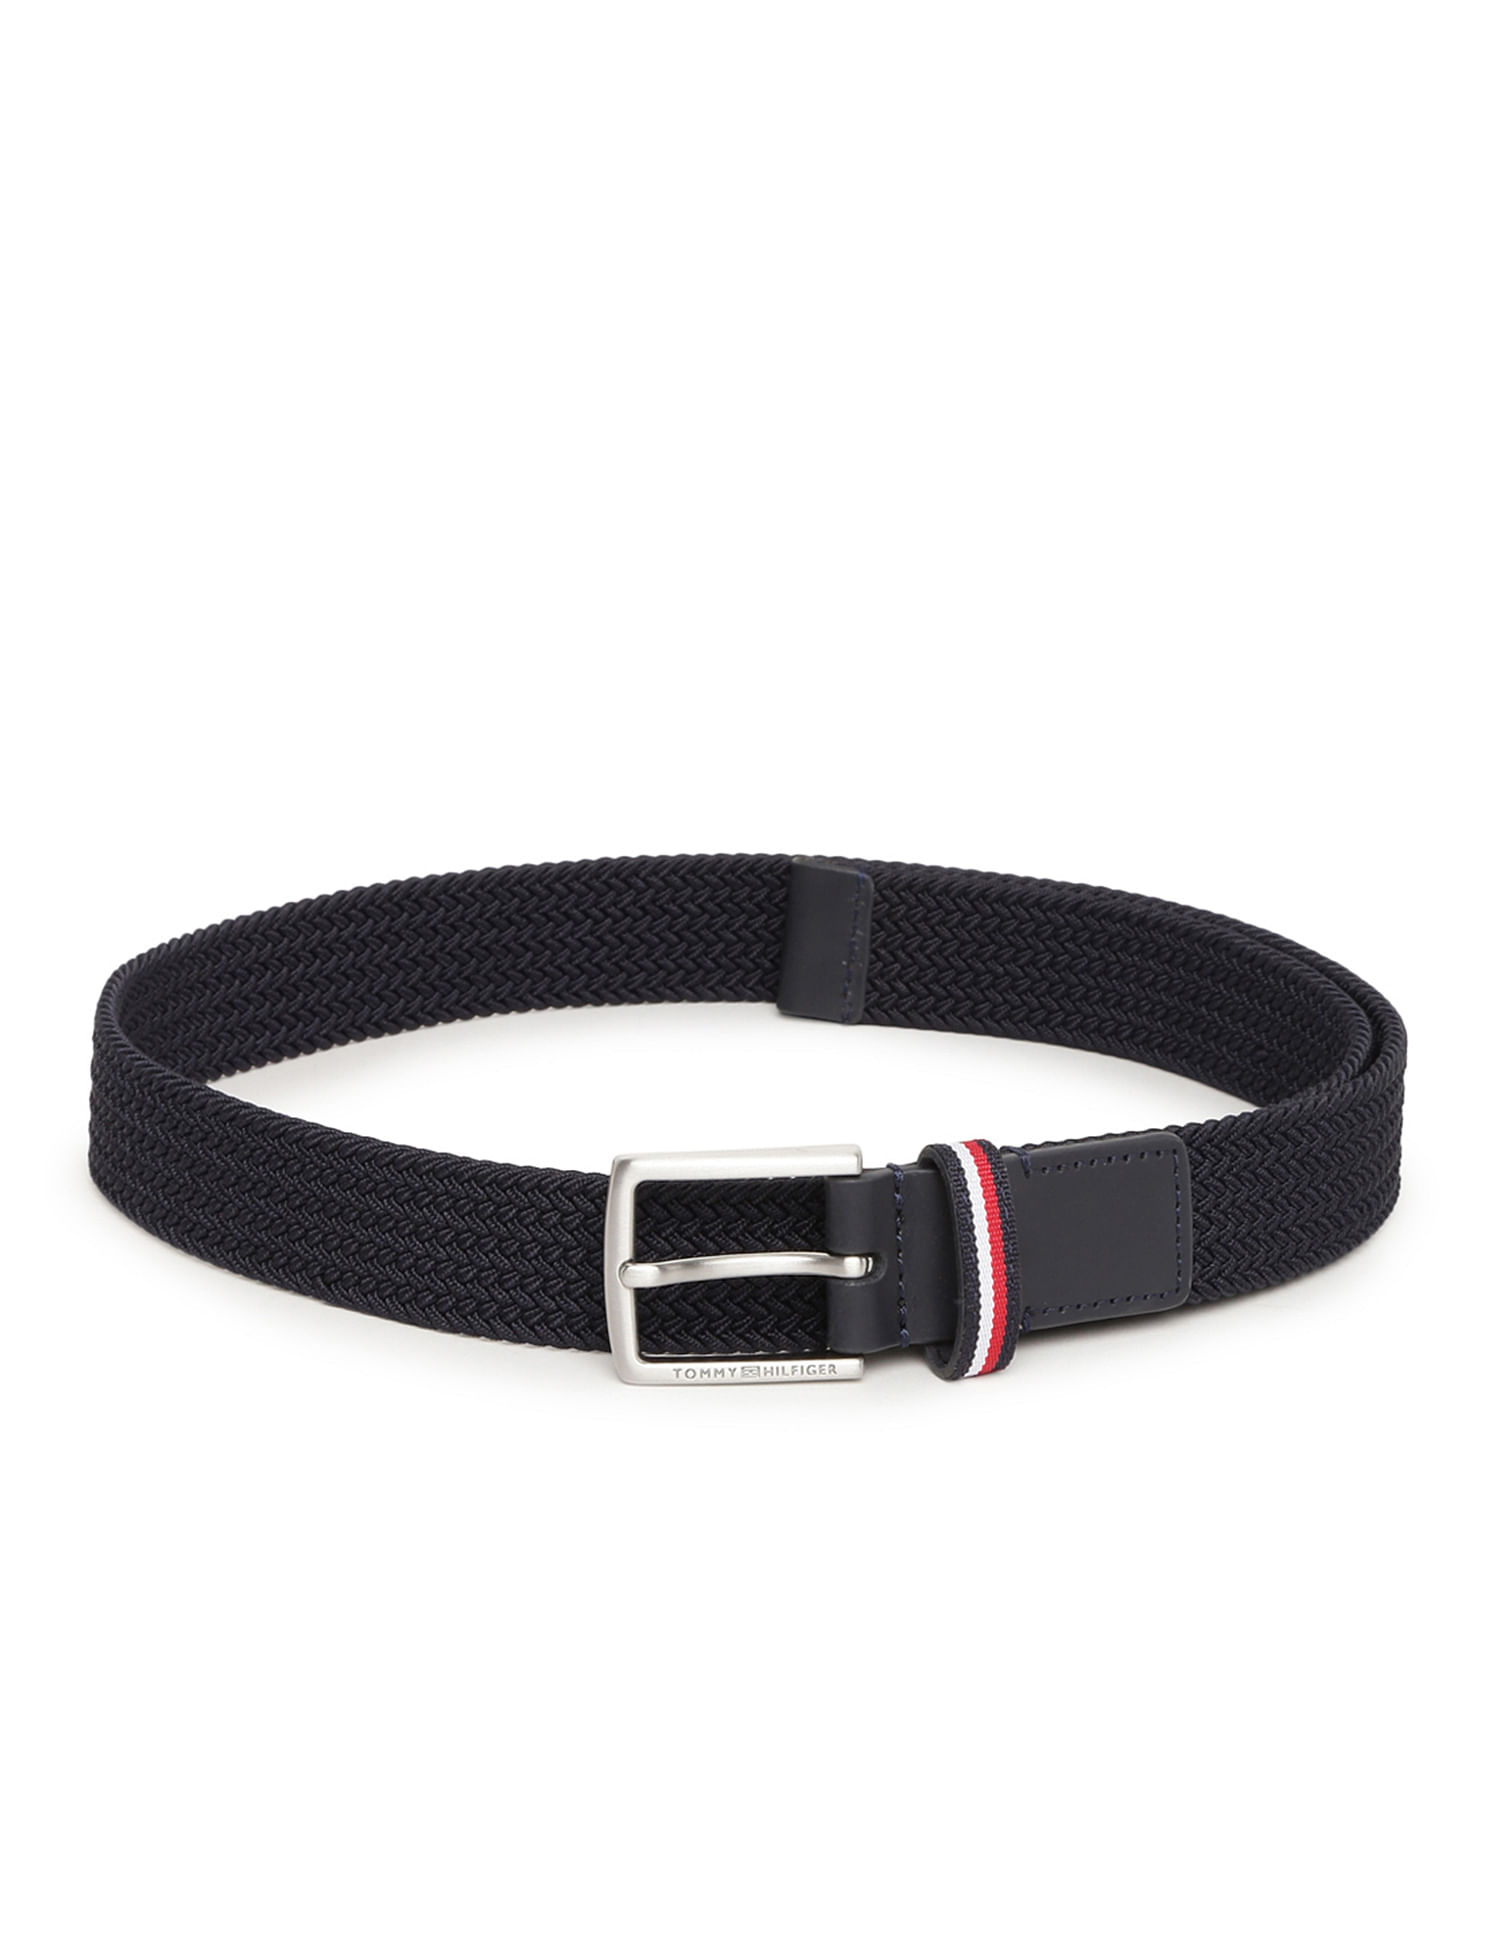 Buy Tommy Hilfiger Kids Boys Elasticated Braided Belt - NNNOW.com